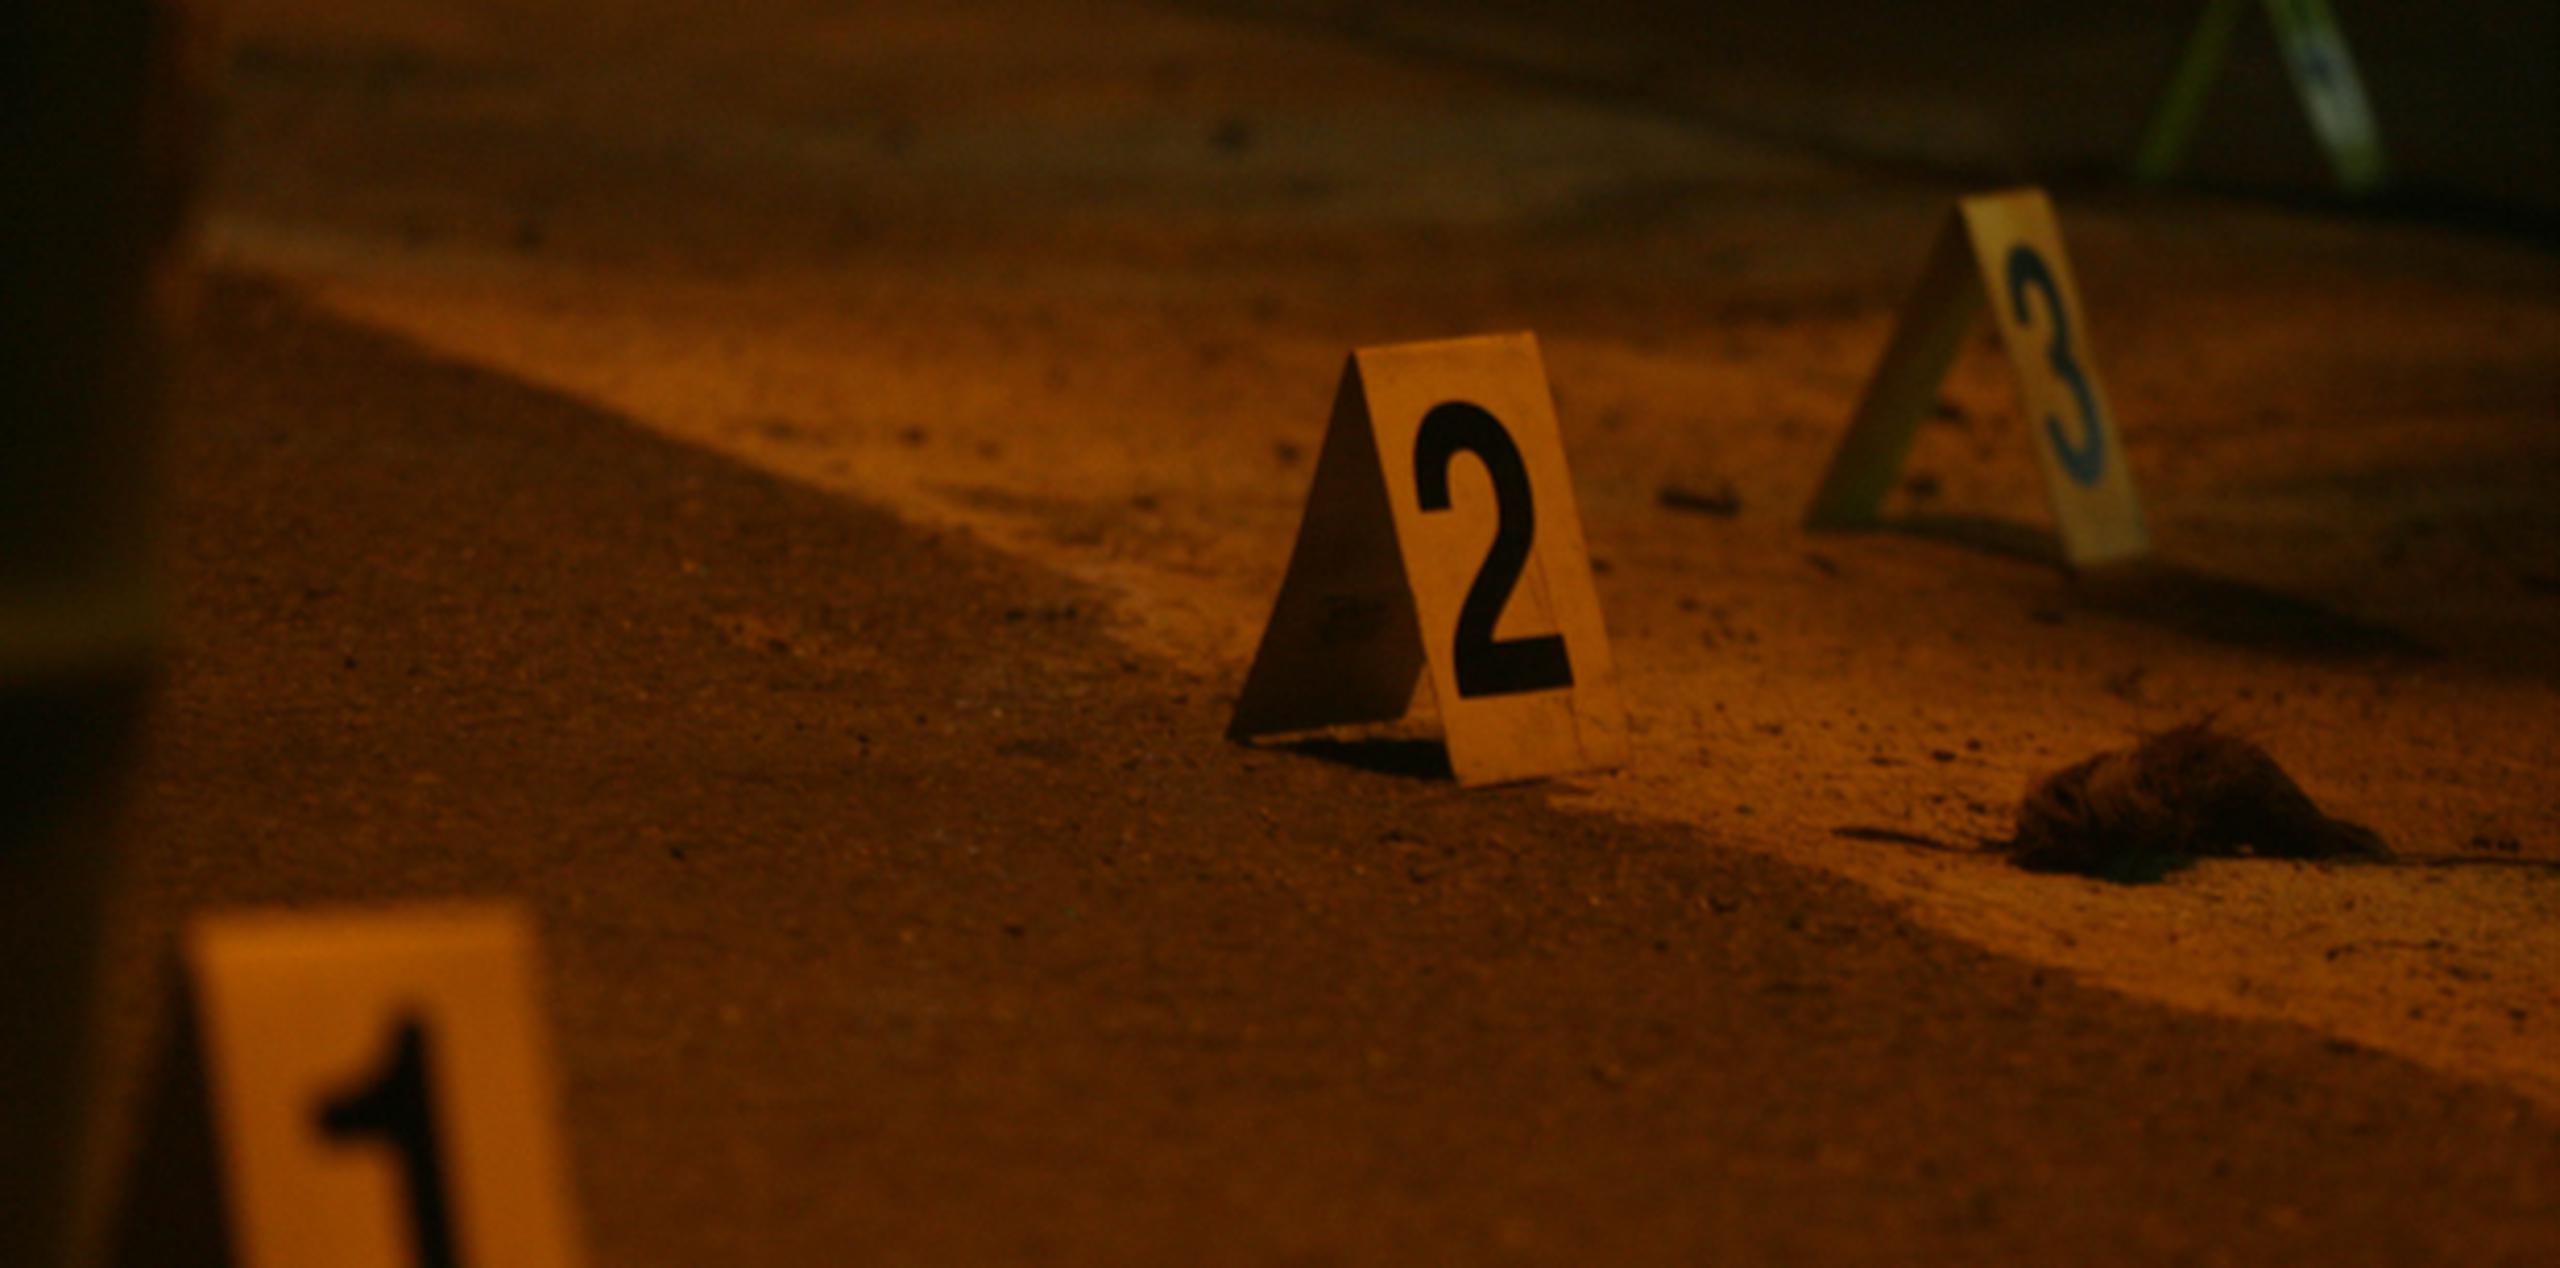 El sábado ocurrieron dos asesinatos en San Juan y uno en Guaynabo. (Archivo)